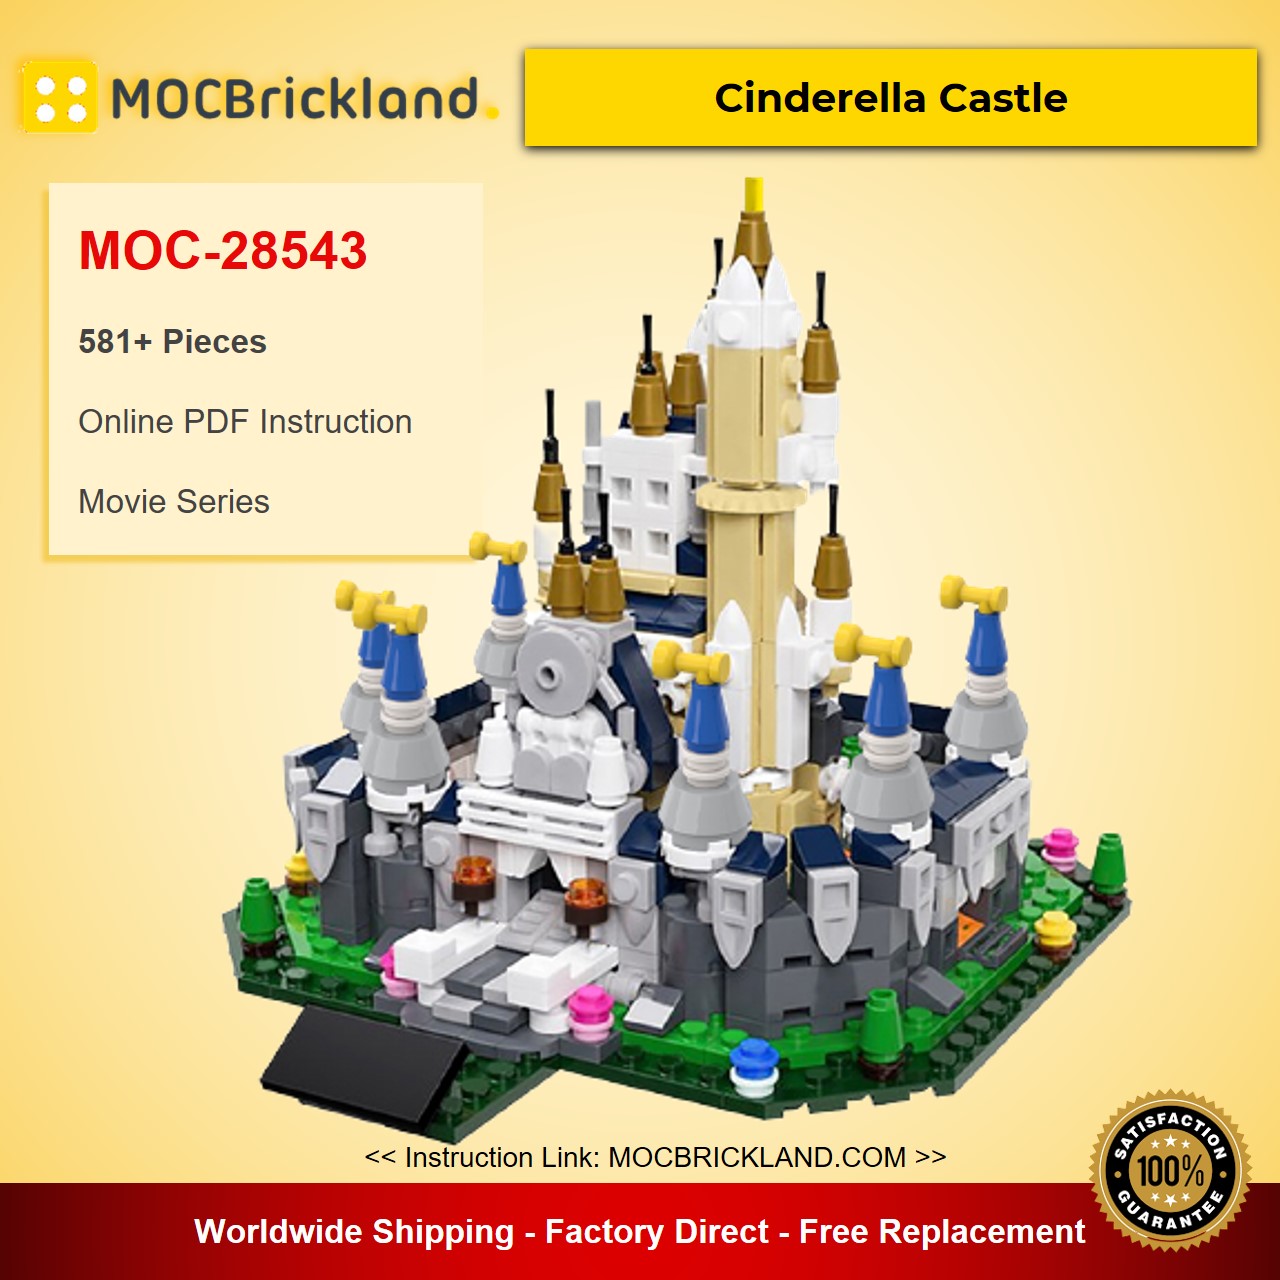 MOCBRICKLAND MOC-28543 Cinderella Castle